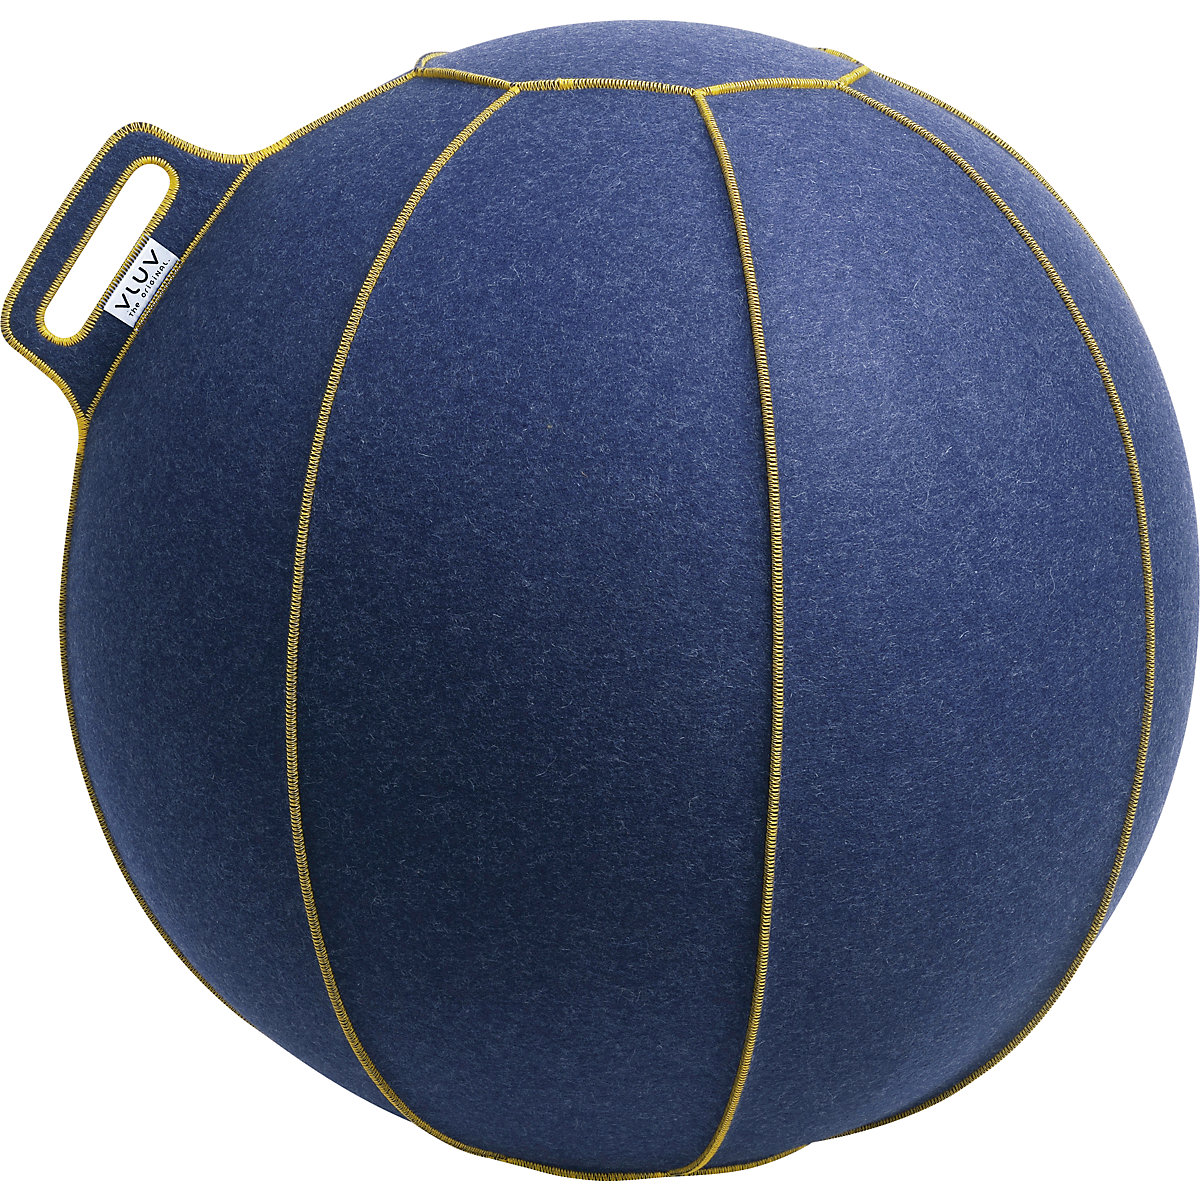 Fitball VELT – VLUV, in feltro di lana merino, 700 – 750 mm, jeans-screziato/oro-8